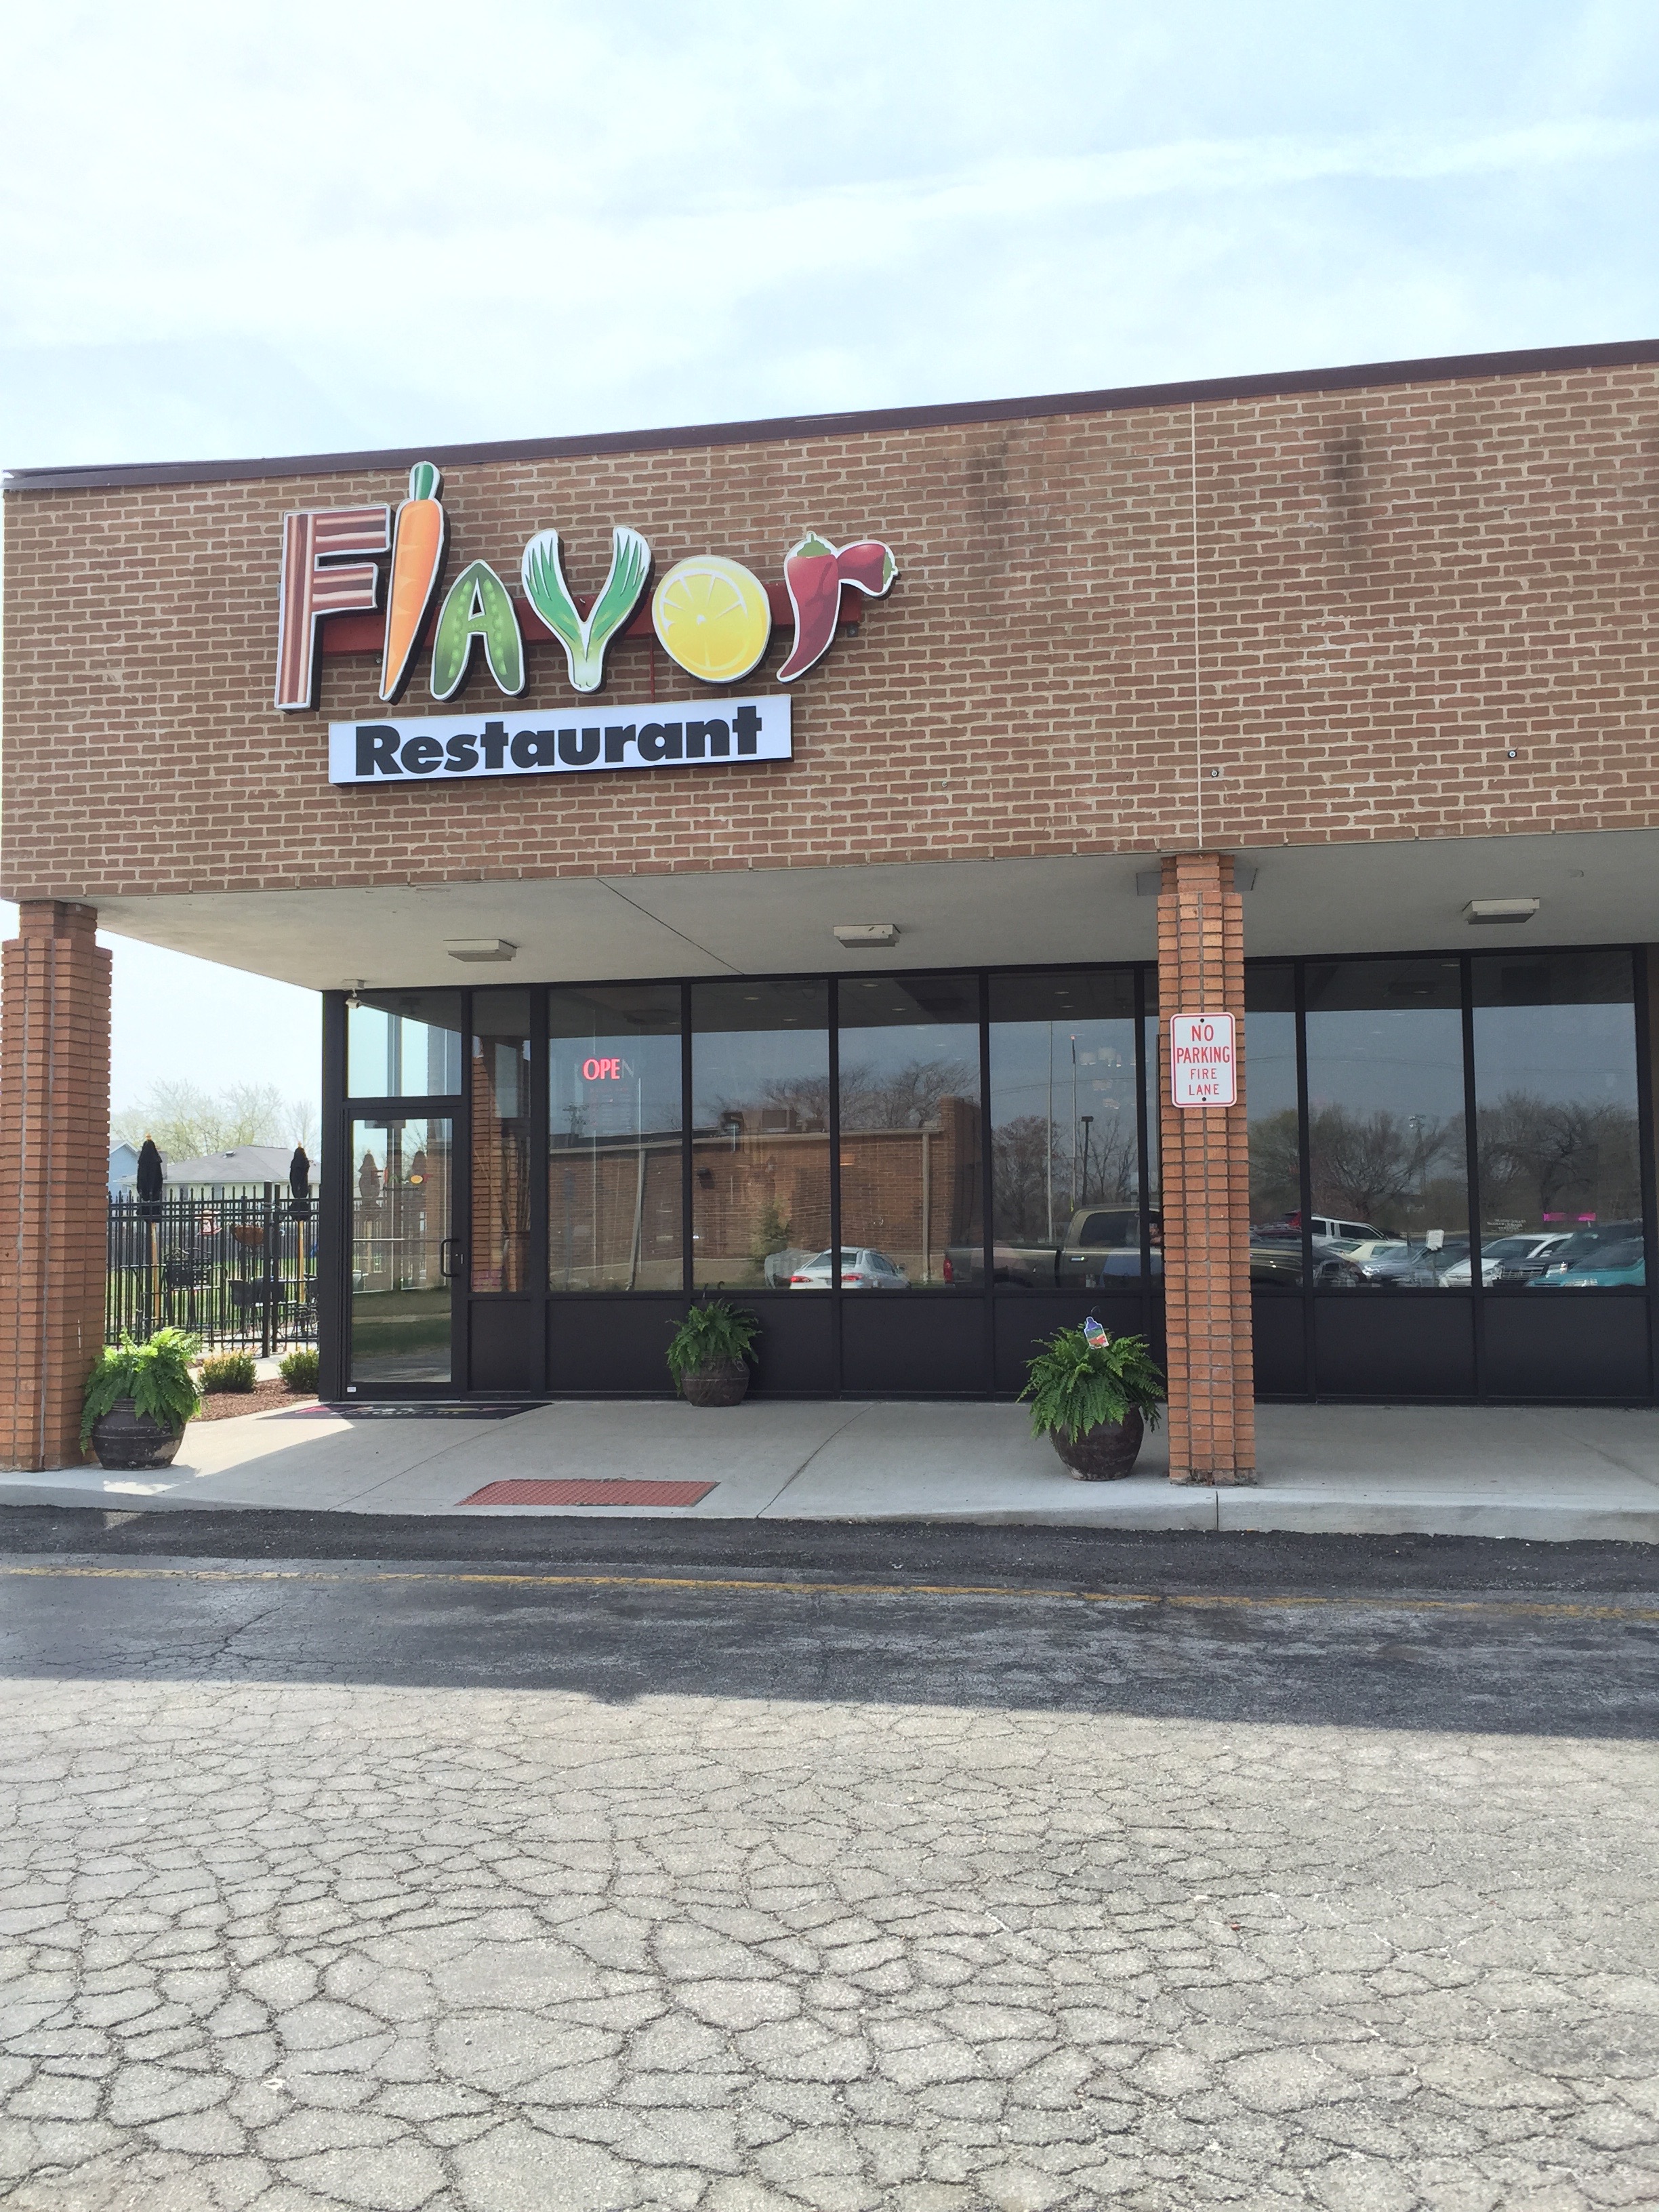 Flavor Restaurant - Richton Park, IL